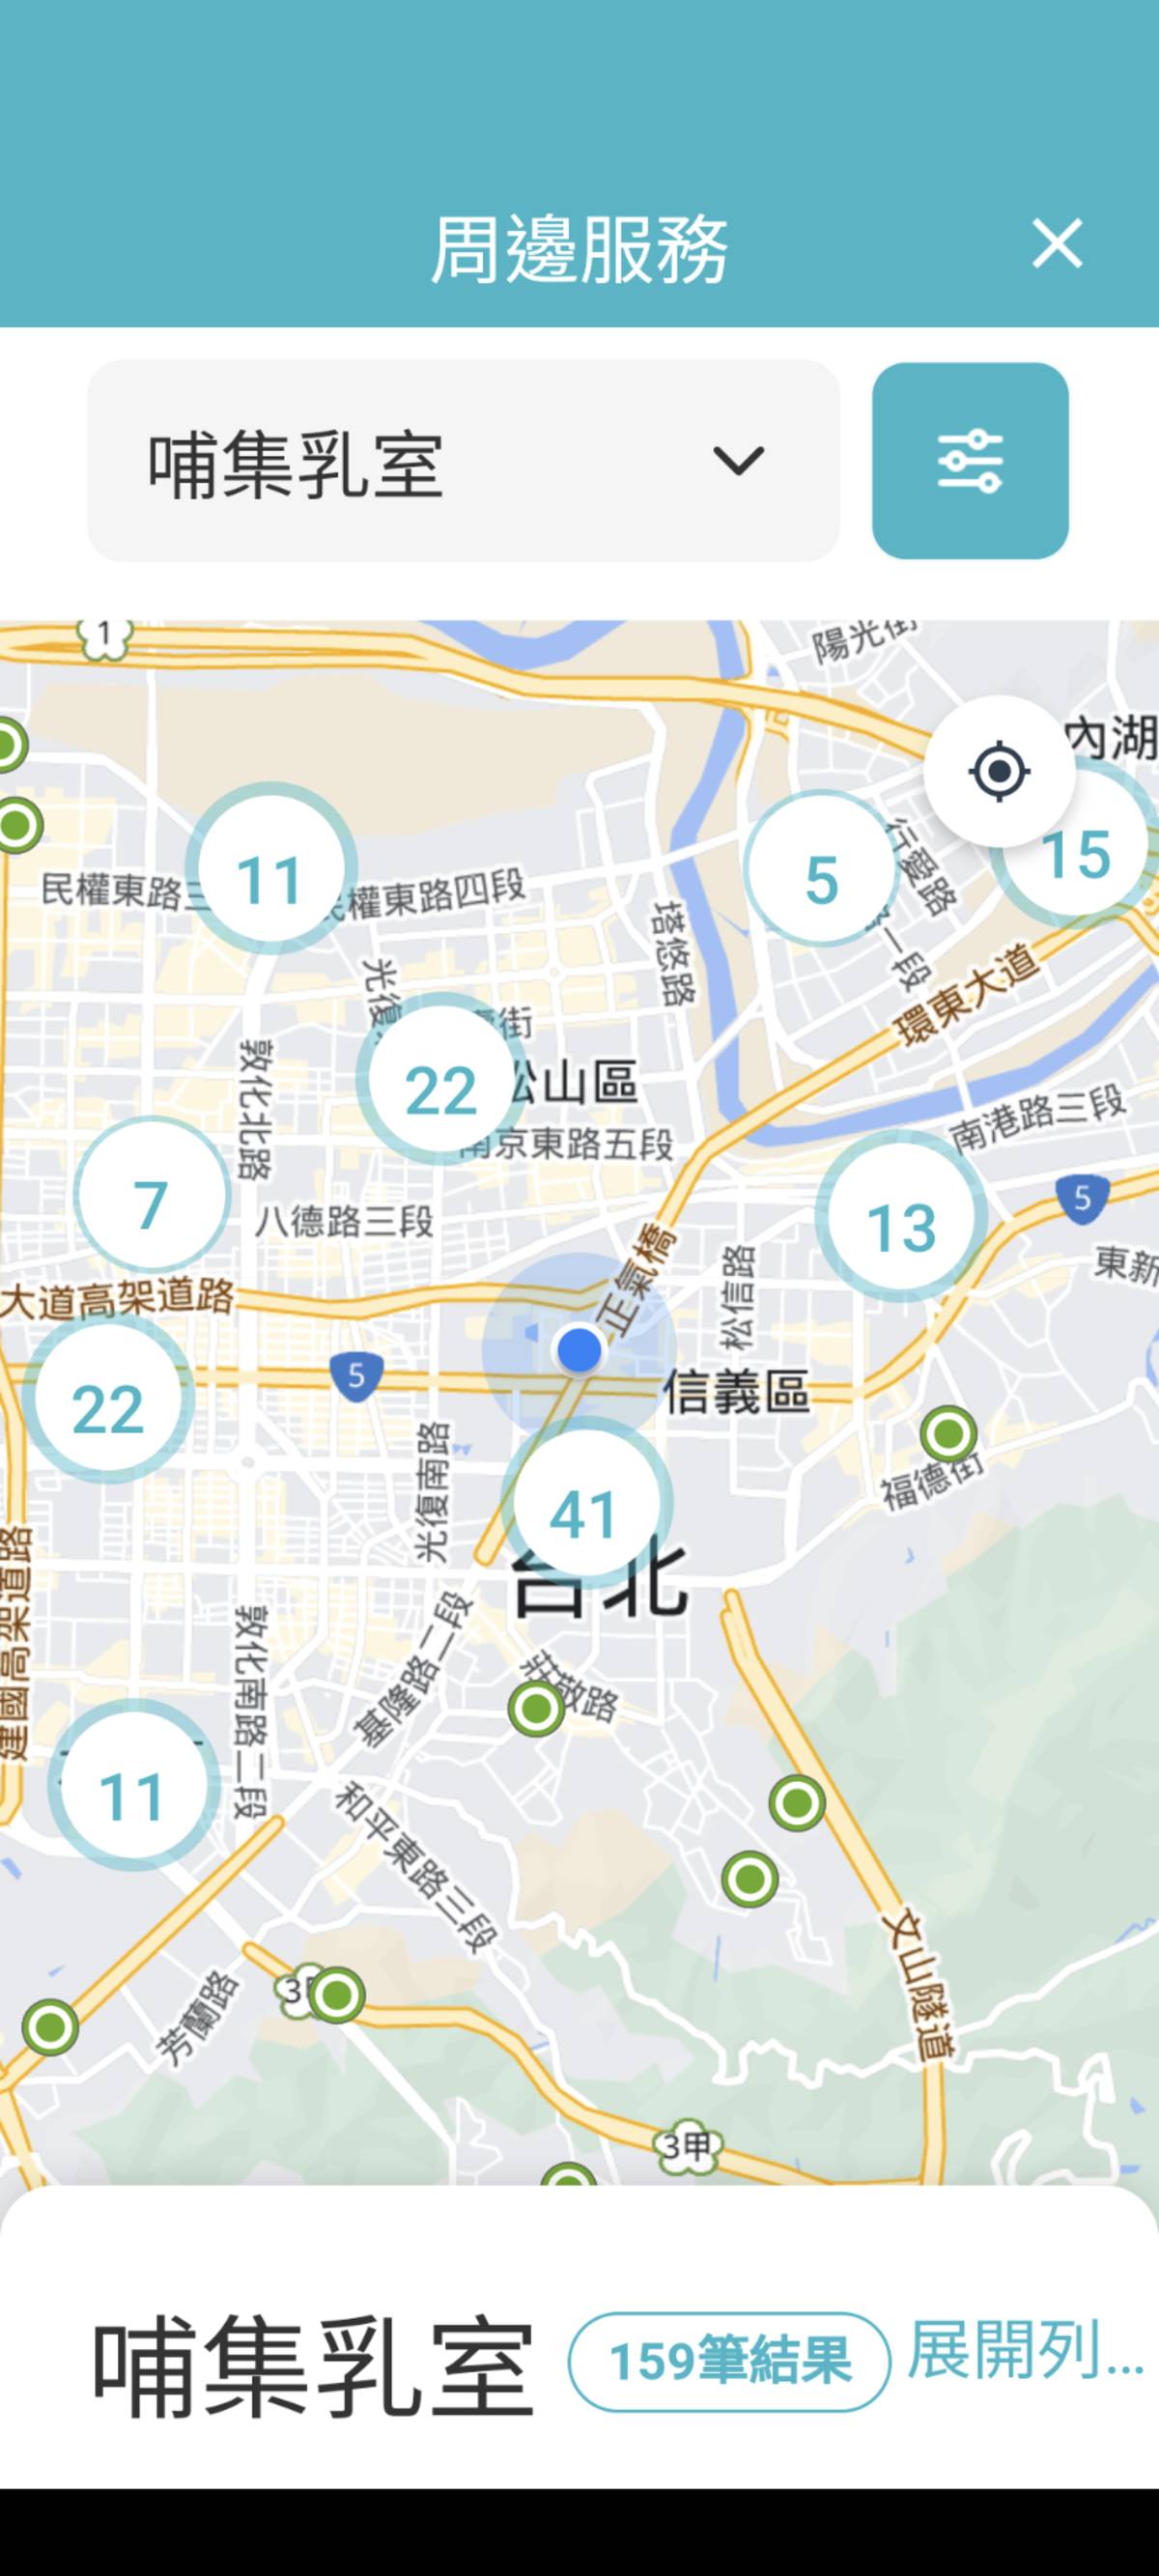 「臺北通」App提供查詢哺(集)乳室地點的貼心服務